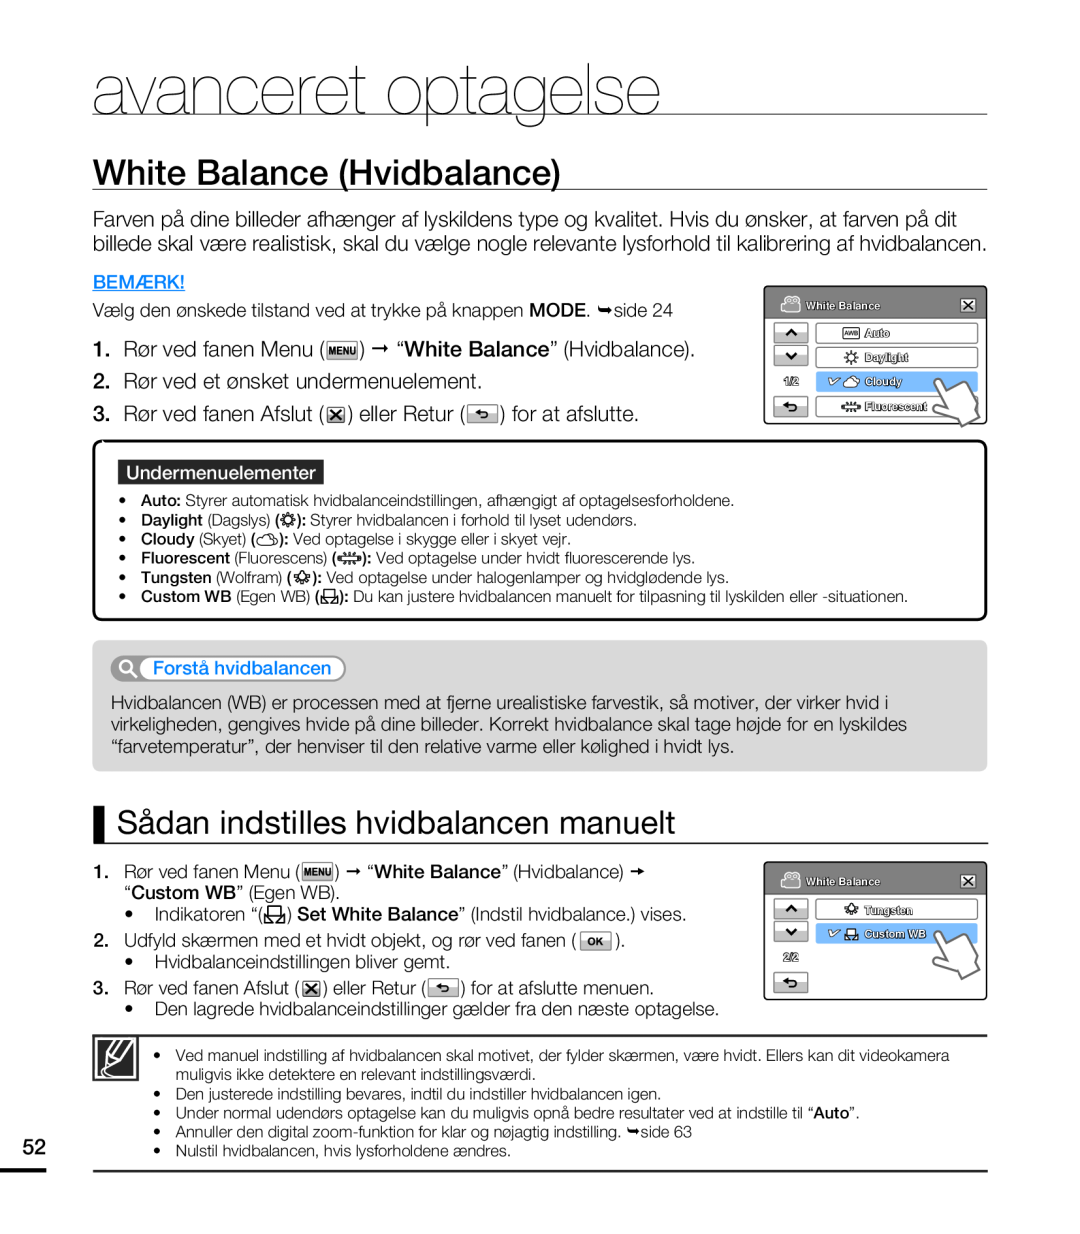 Samsung HMX-T10WP/EDC manual White Balance Hvidbalance, Sådan indstilles hvidbalancen manuelt, avanceret optagelse, Bemærk 